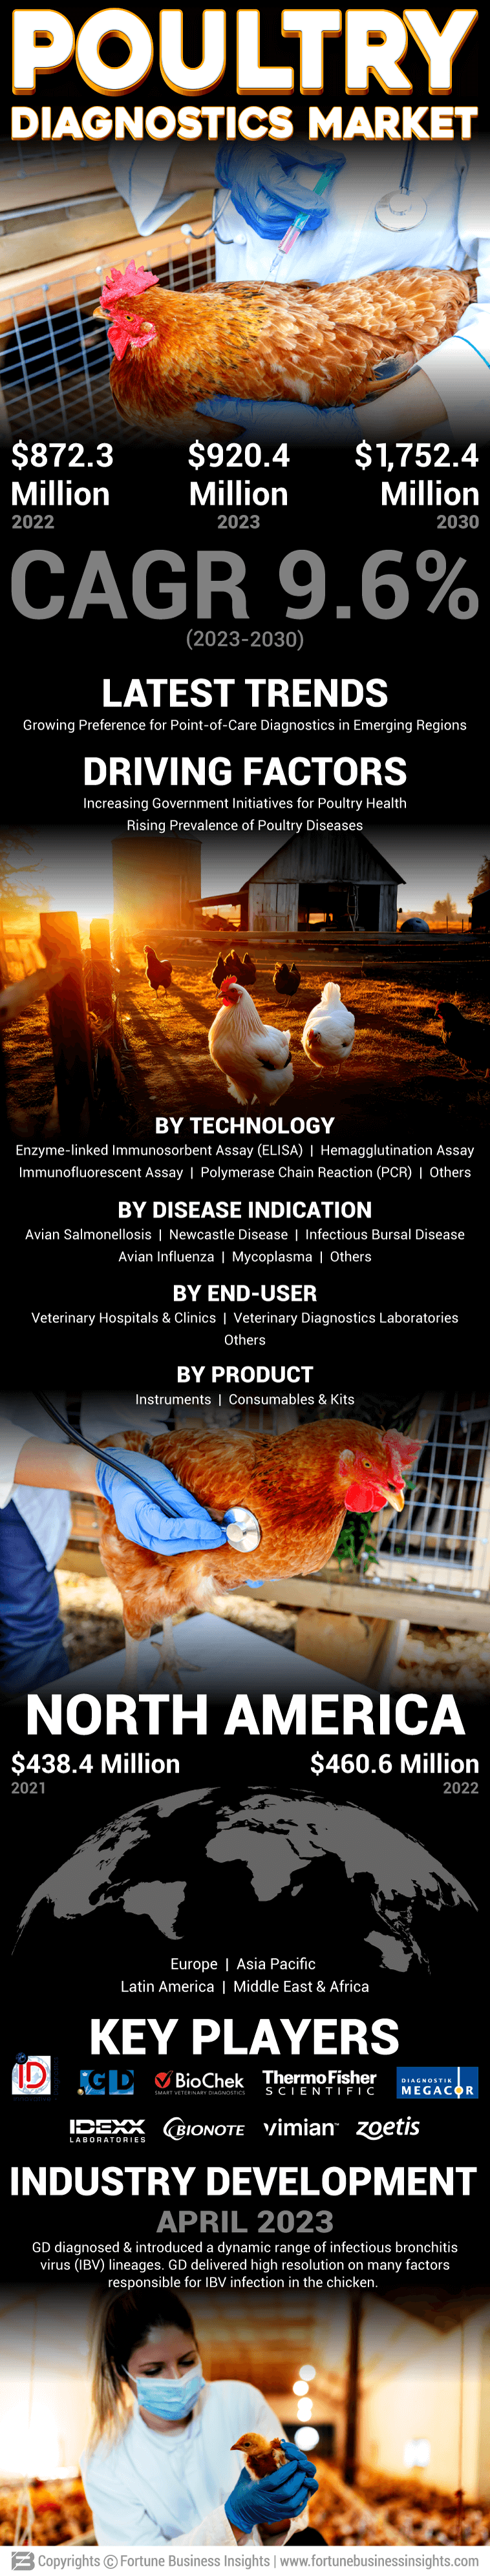 Poultry Diagnostics Market 